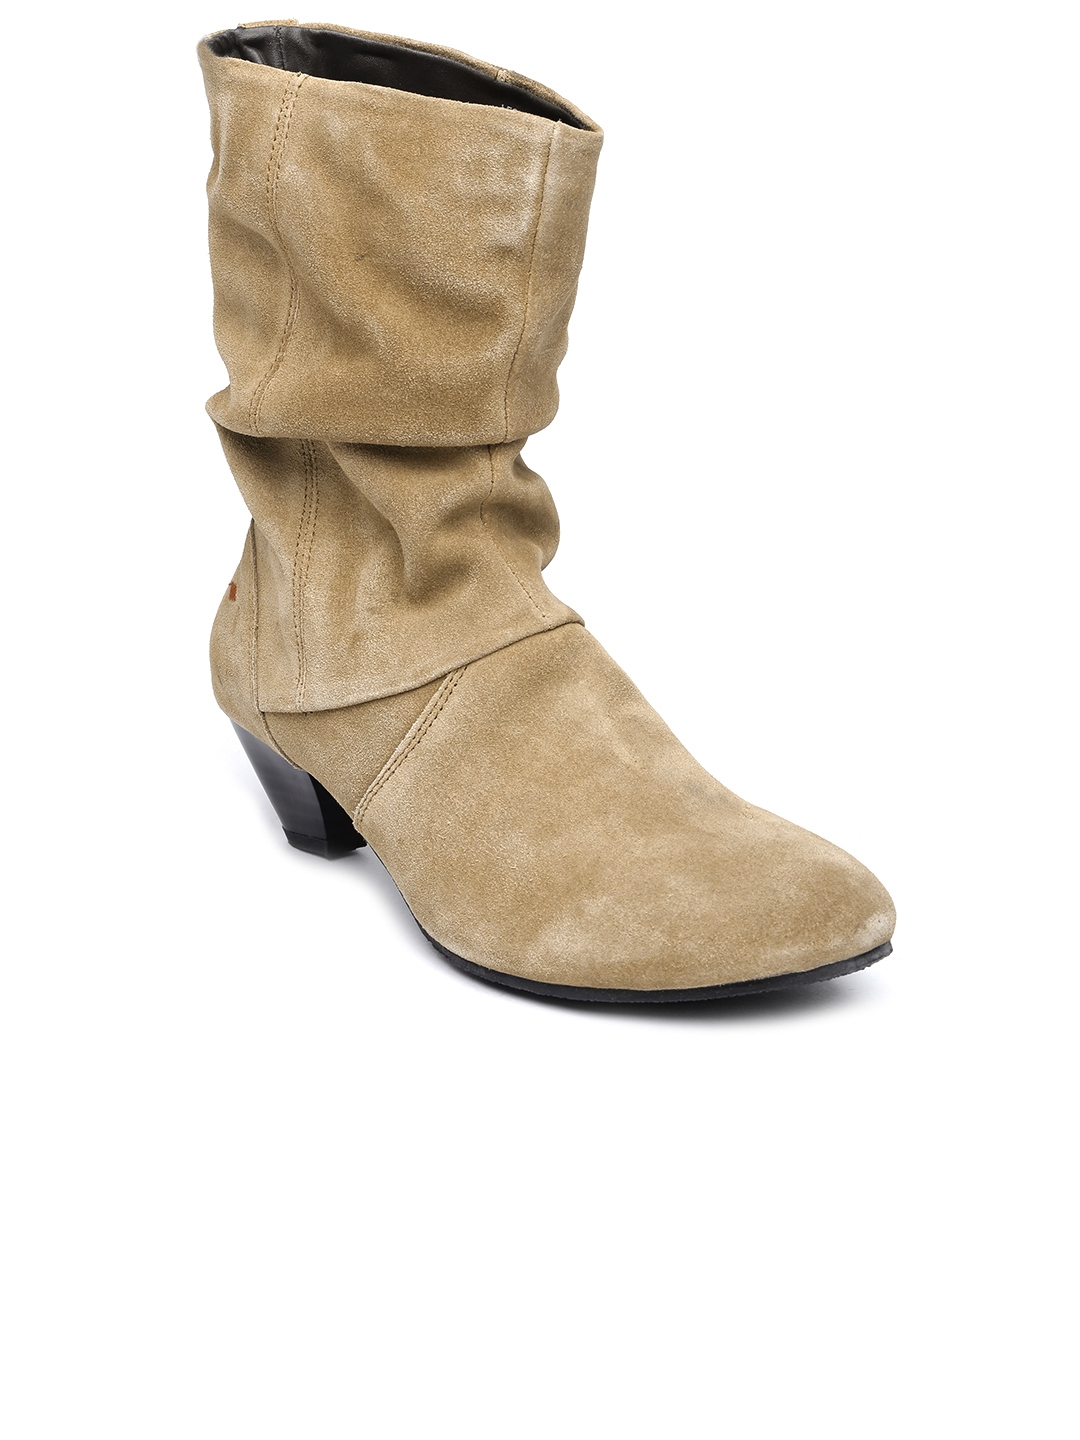 Tan Brown Suede Heeled Boots - Heels 